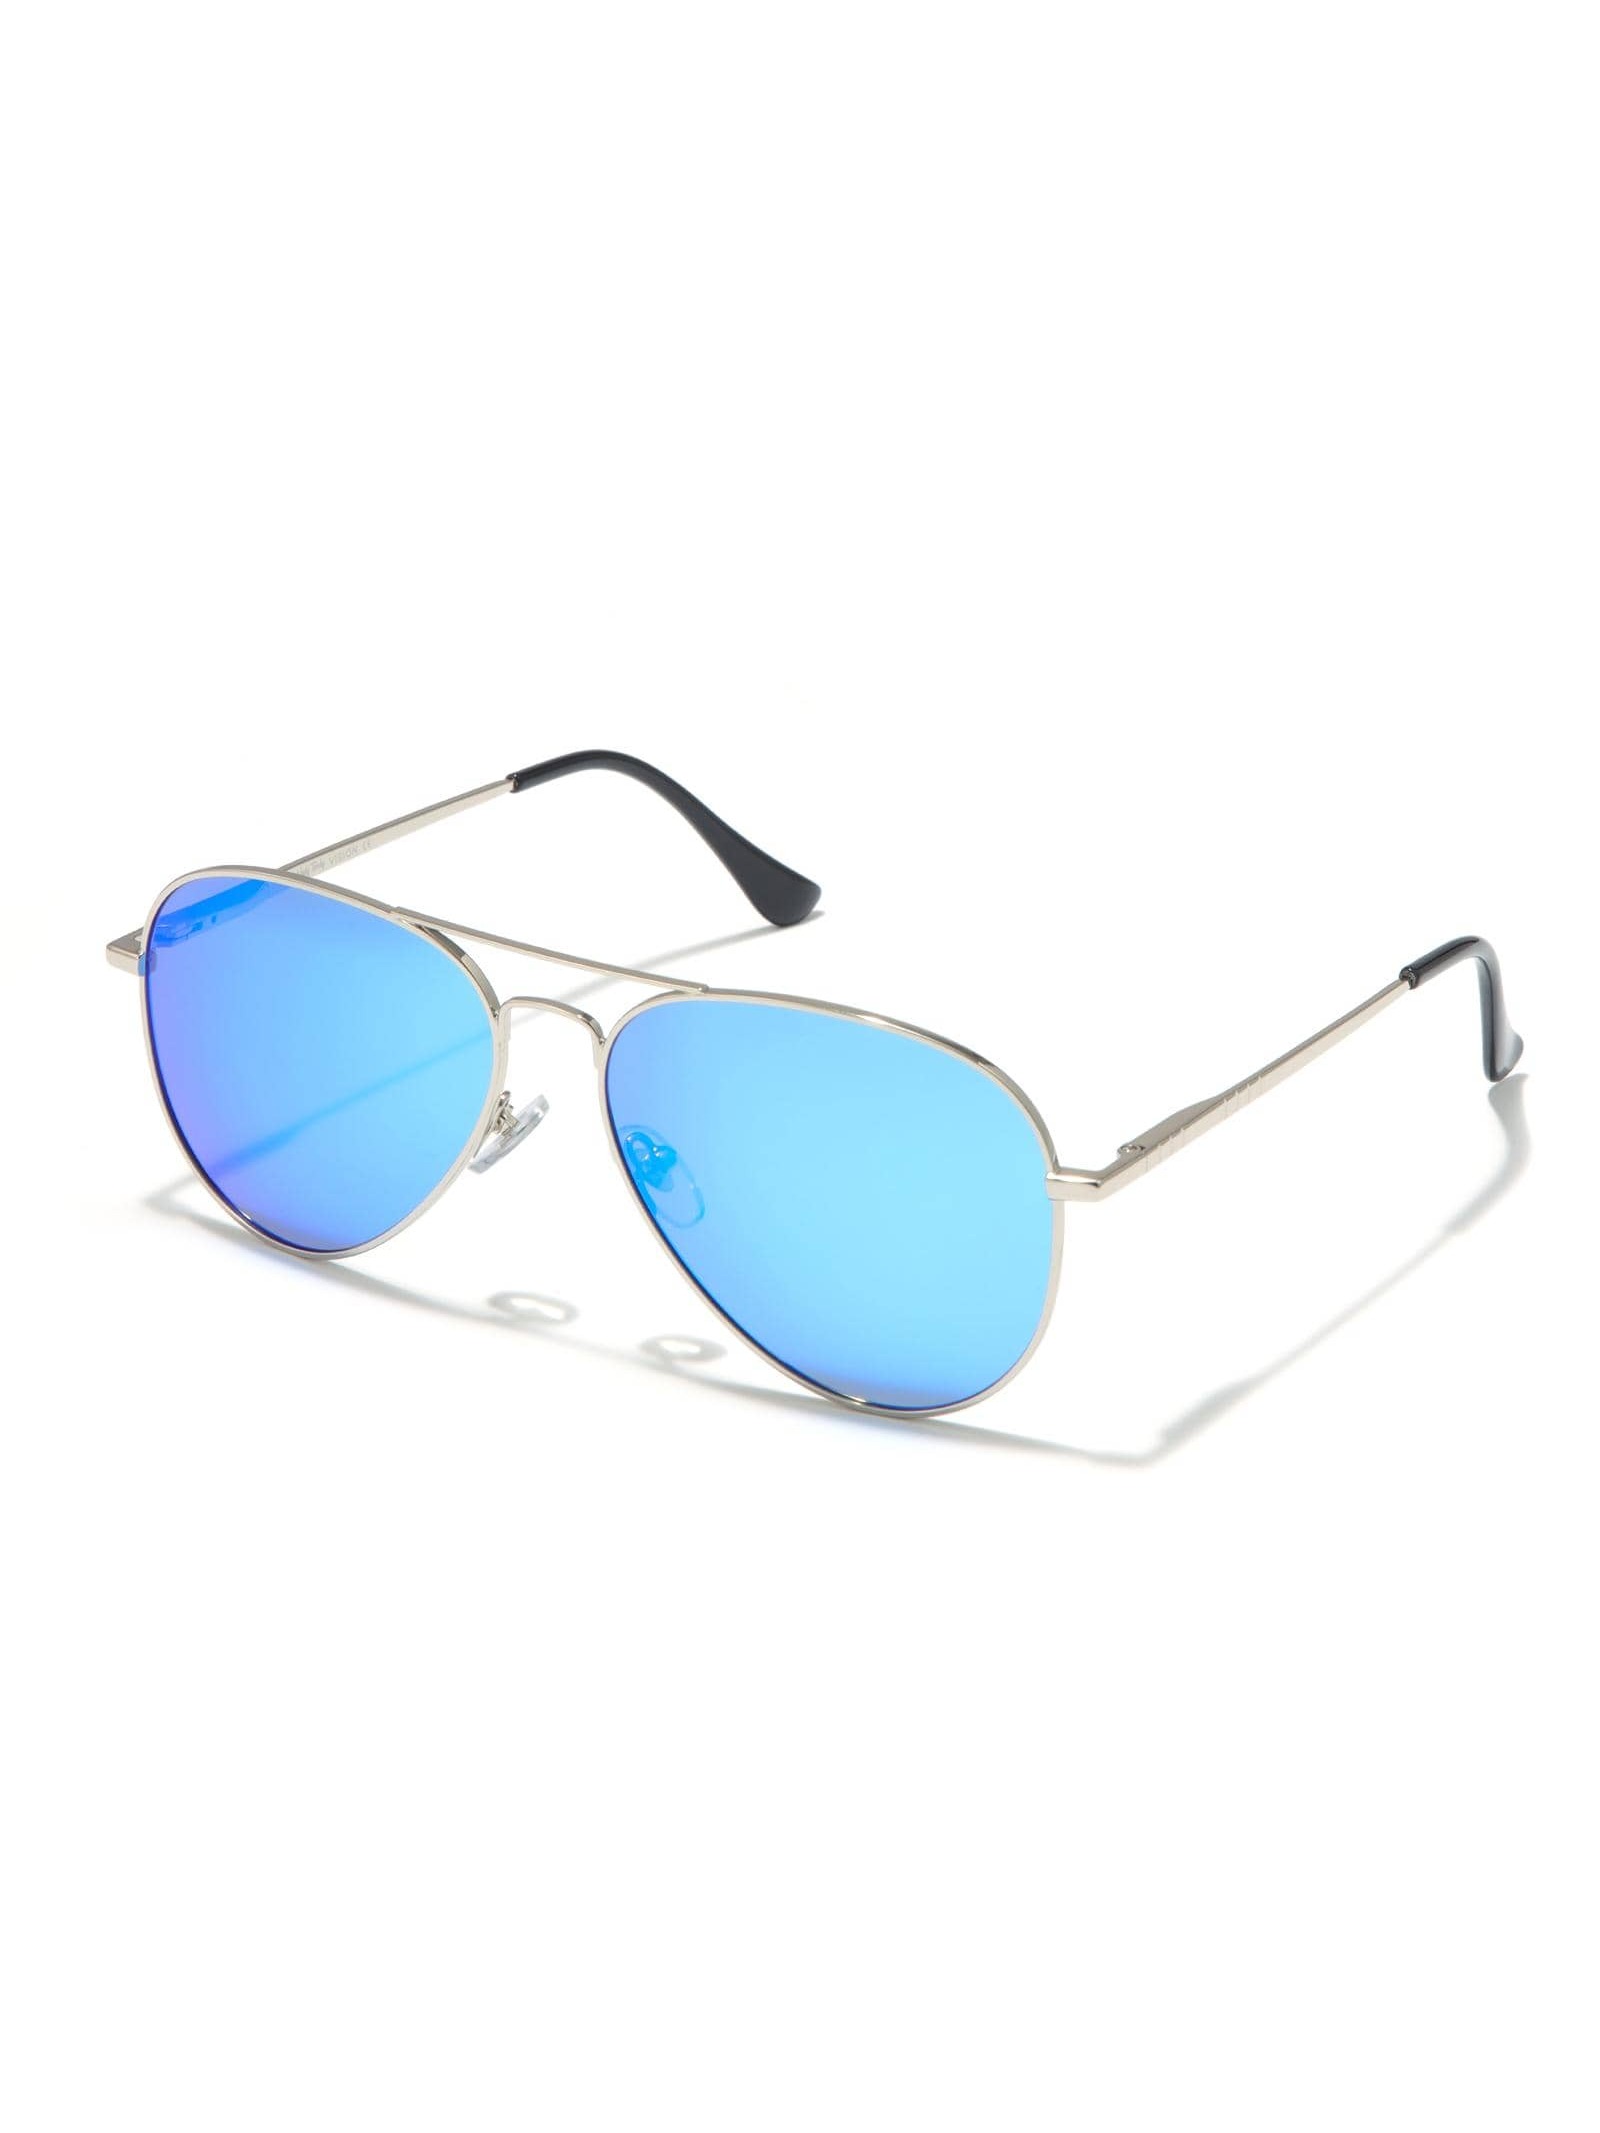 Солнцезащитные очки-авиаторы Veda Tinda для женщин и мужчин солнцезащитные очки boss авиаторы оправа металл для мужчин серый